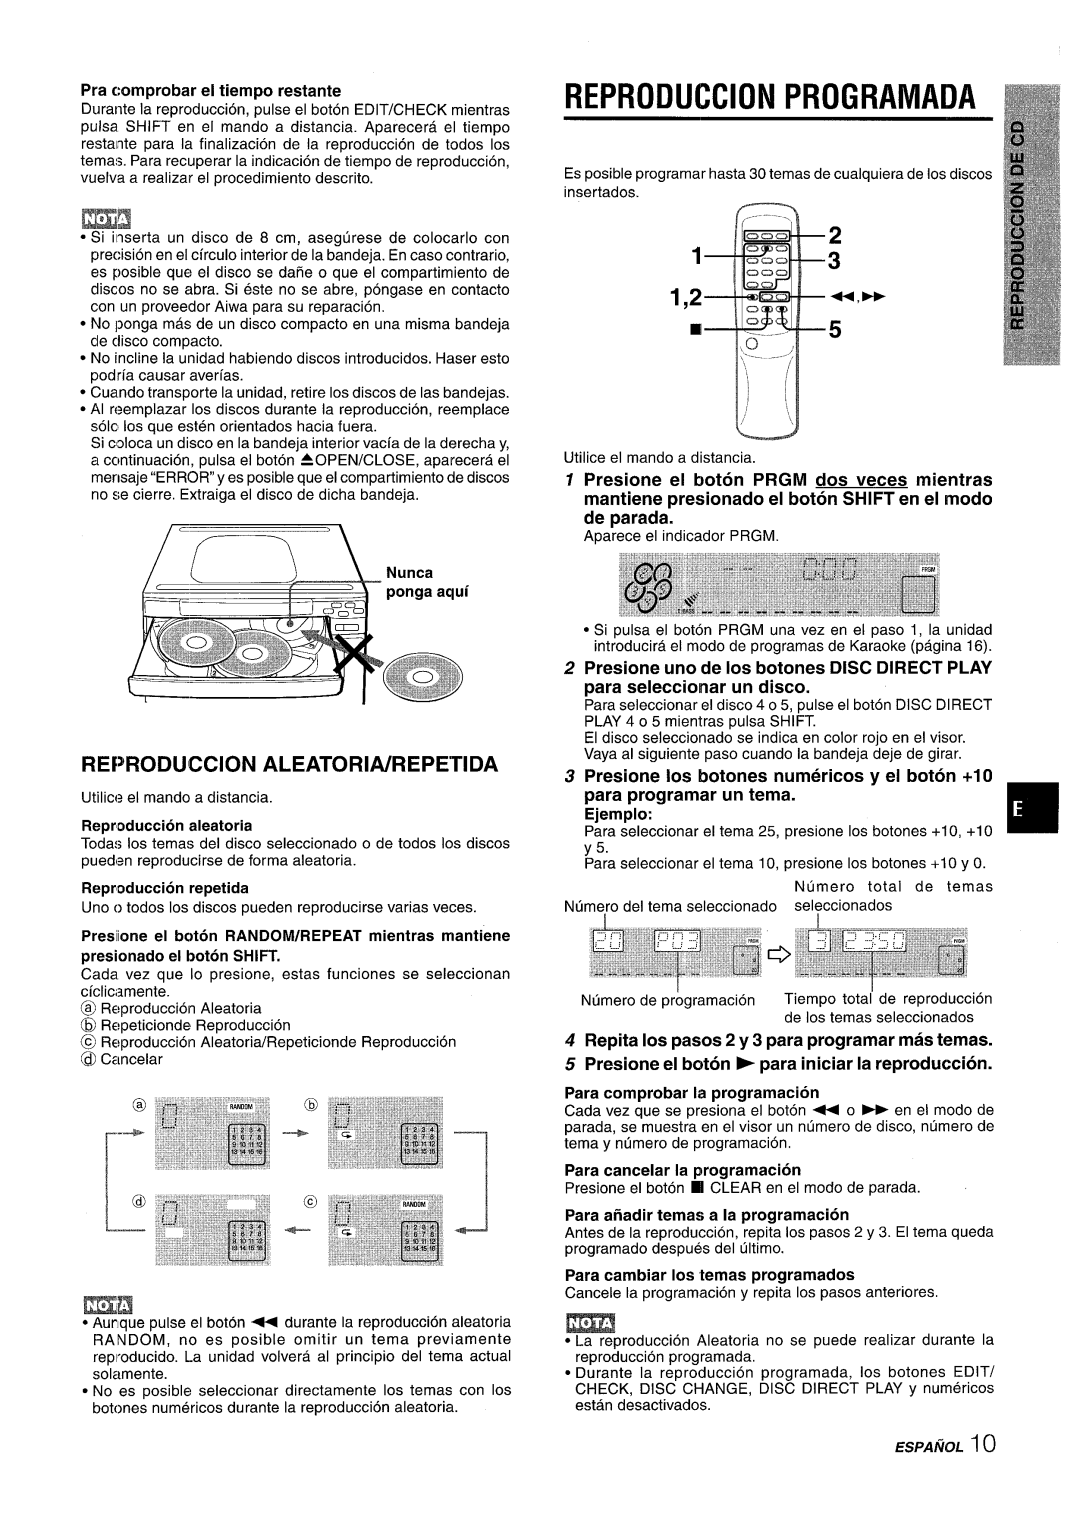 Sony CX-ZR525 manual Reproduction Programada, REPRODUCC1ON ALEATORIA/REPETIDA, Pra cornprobar el tiempo restante 